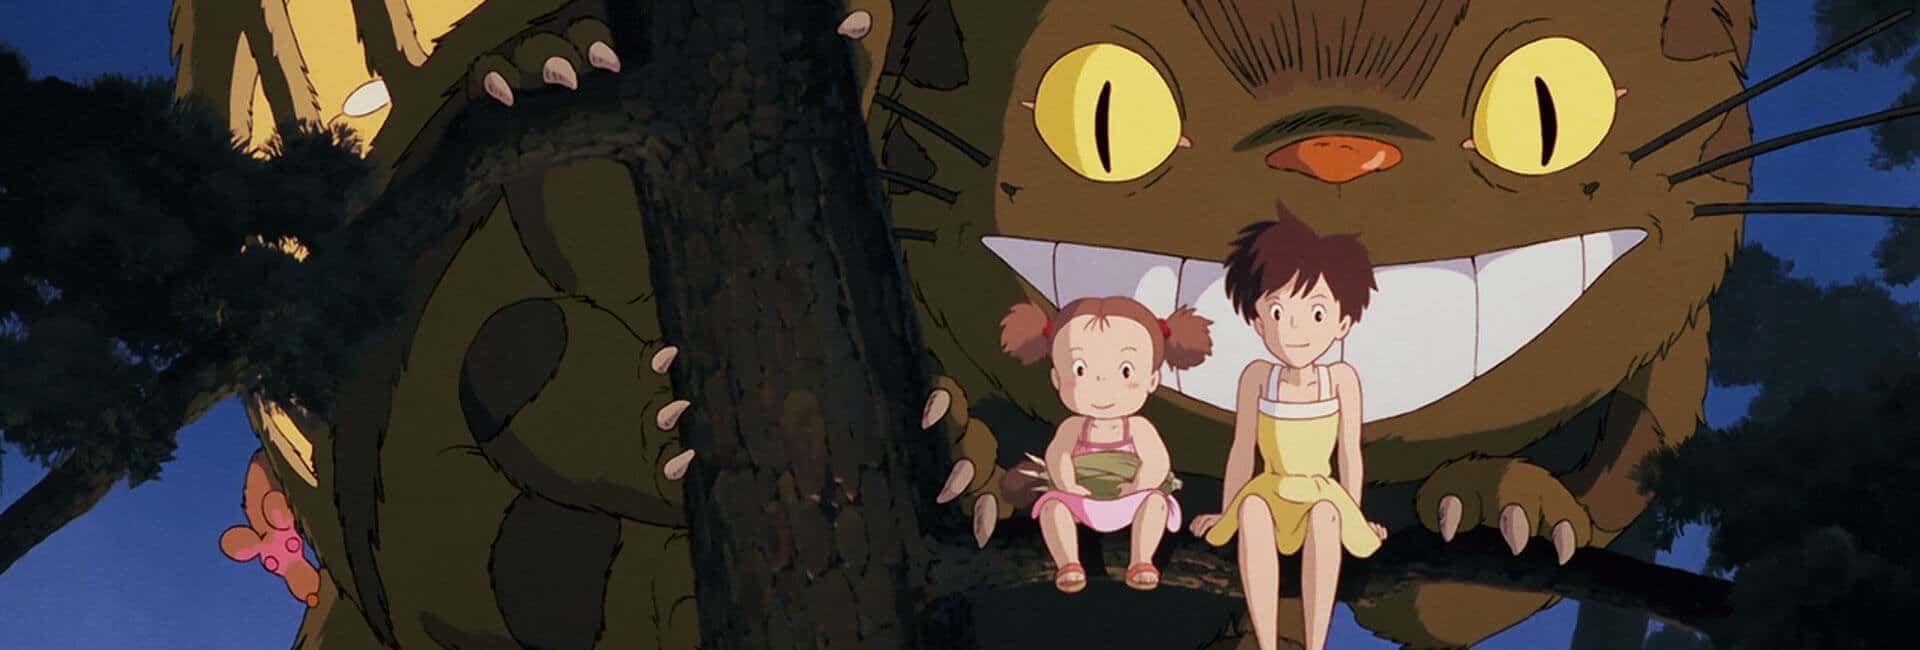 meu amigo totoro 7 melhores filmes do Studio Ghibli